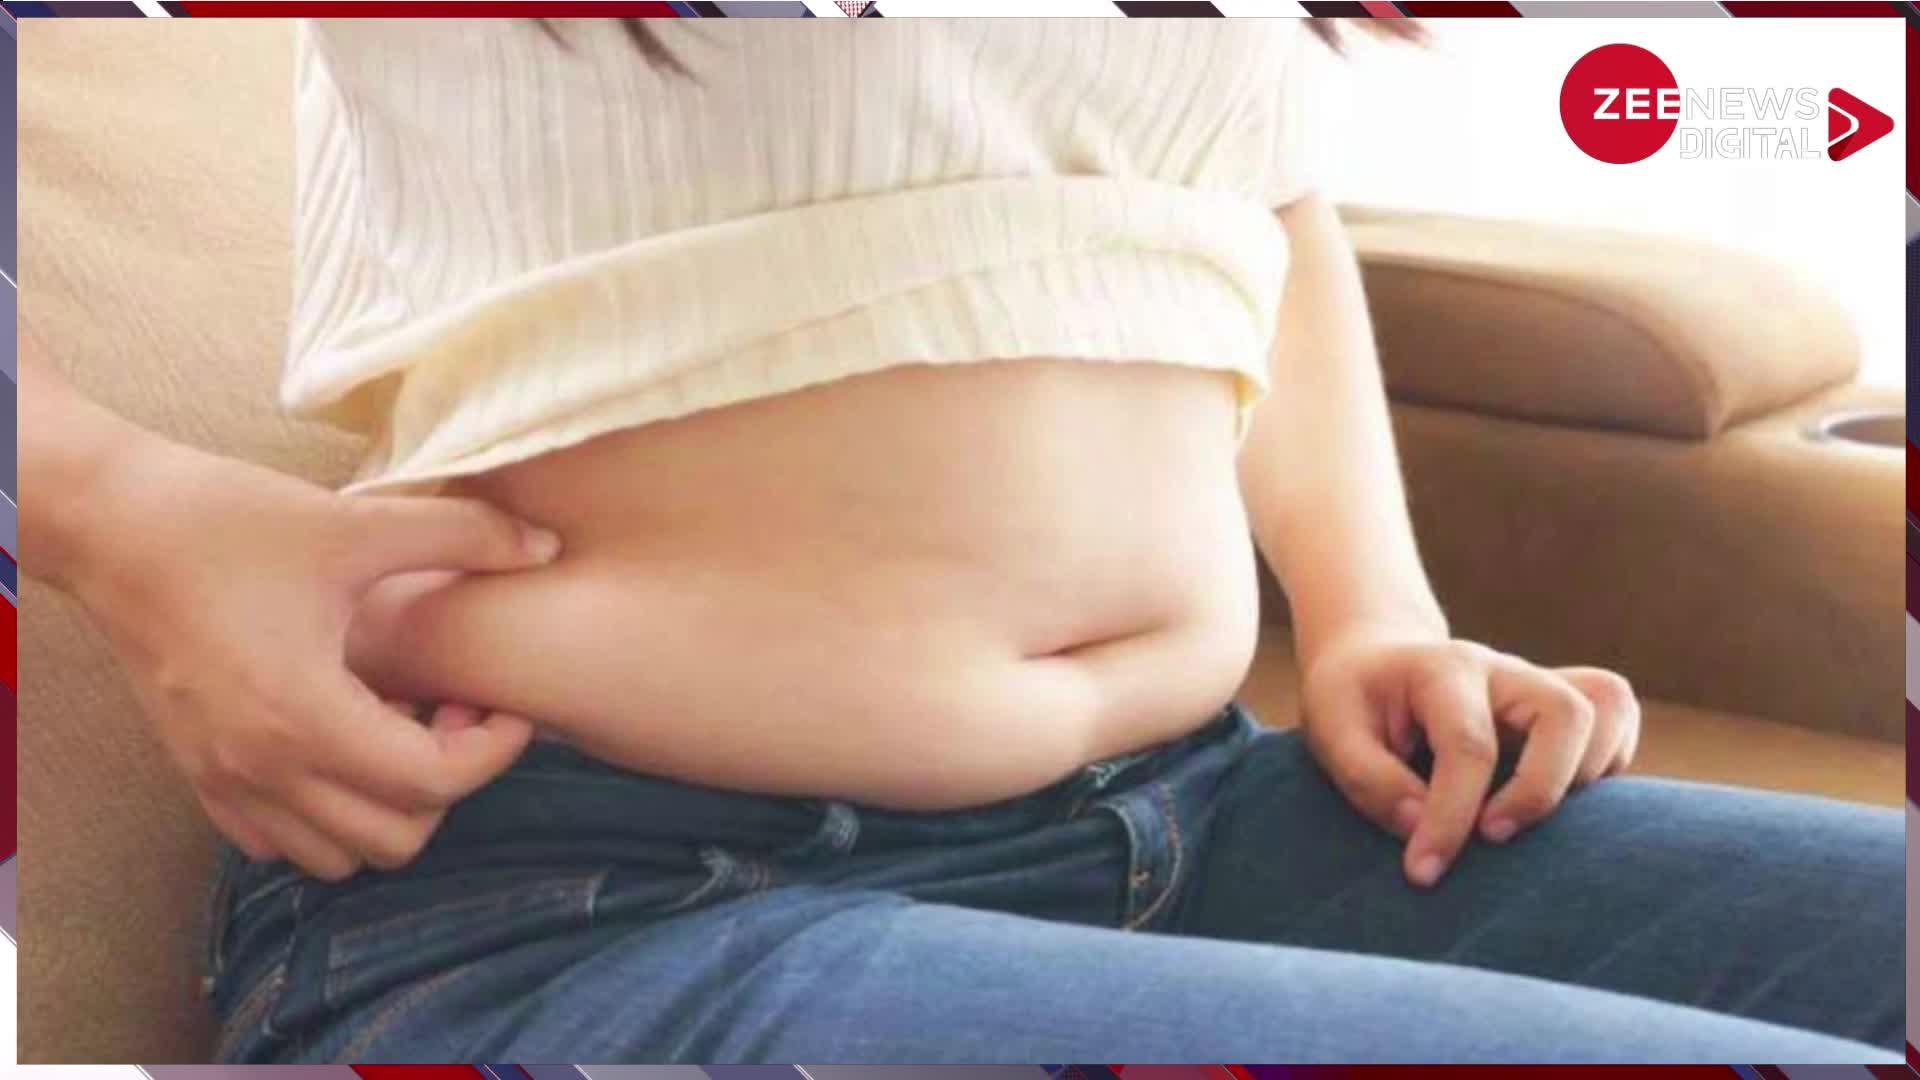 Belly Fat: इन चीजों की वजह से बढ़ता है बेली फैट, न करें नजरअंदाज